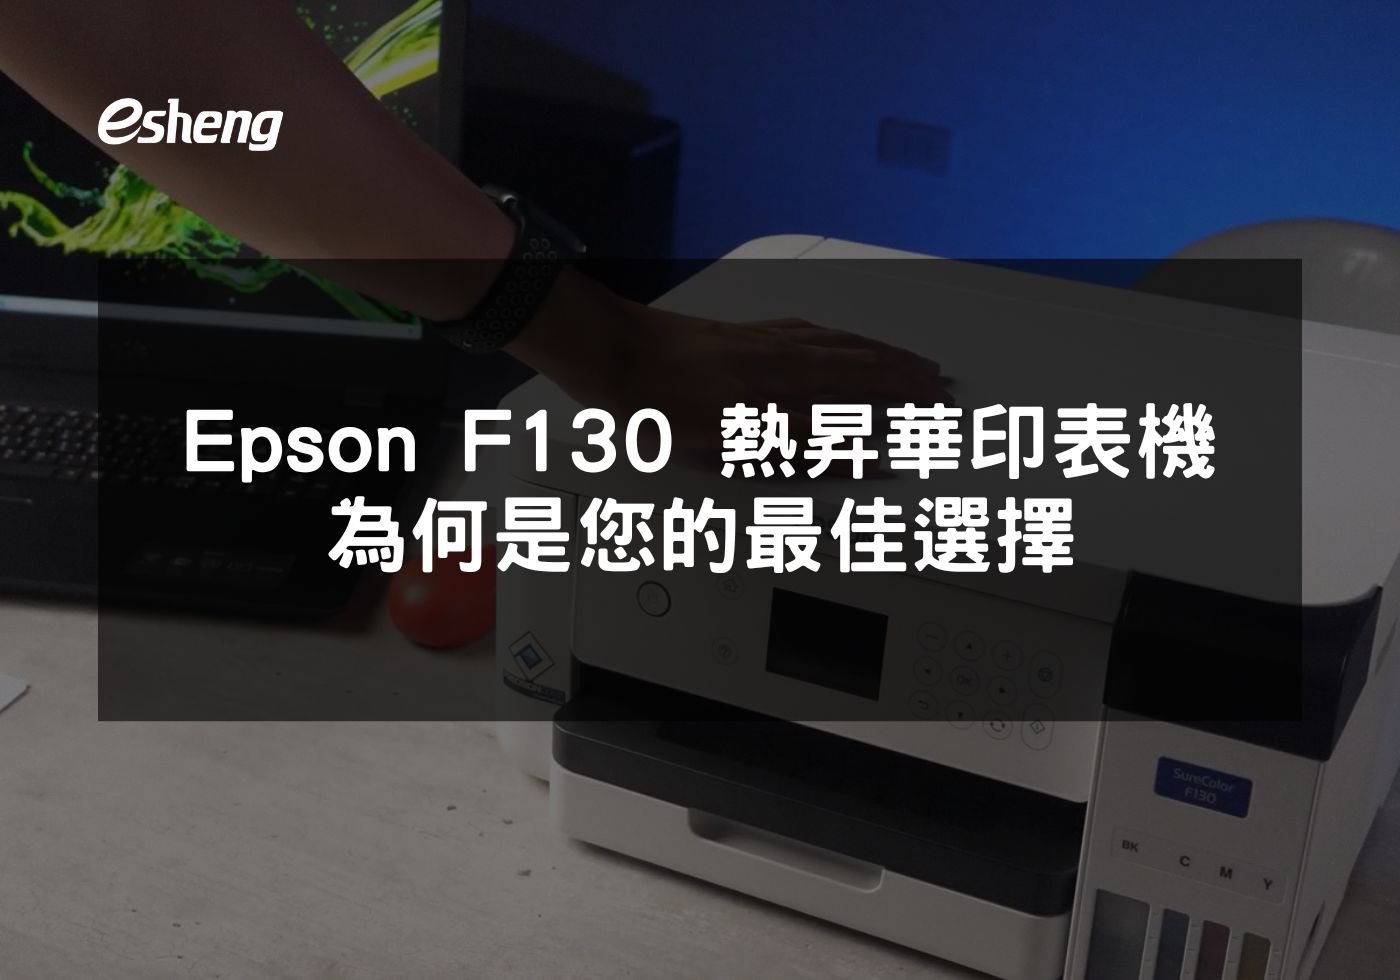 Epson F130 如何革新小型企業的印刷解決方案